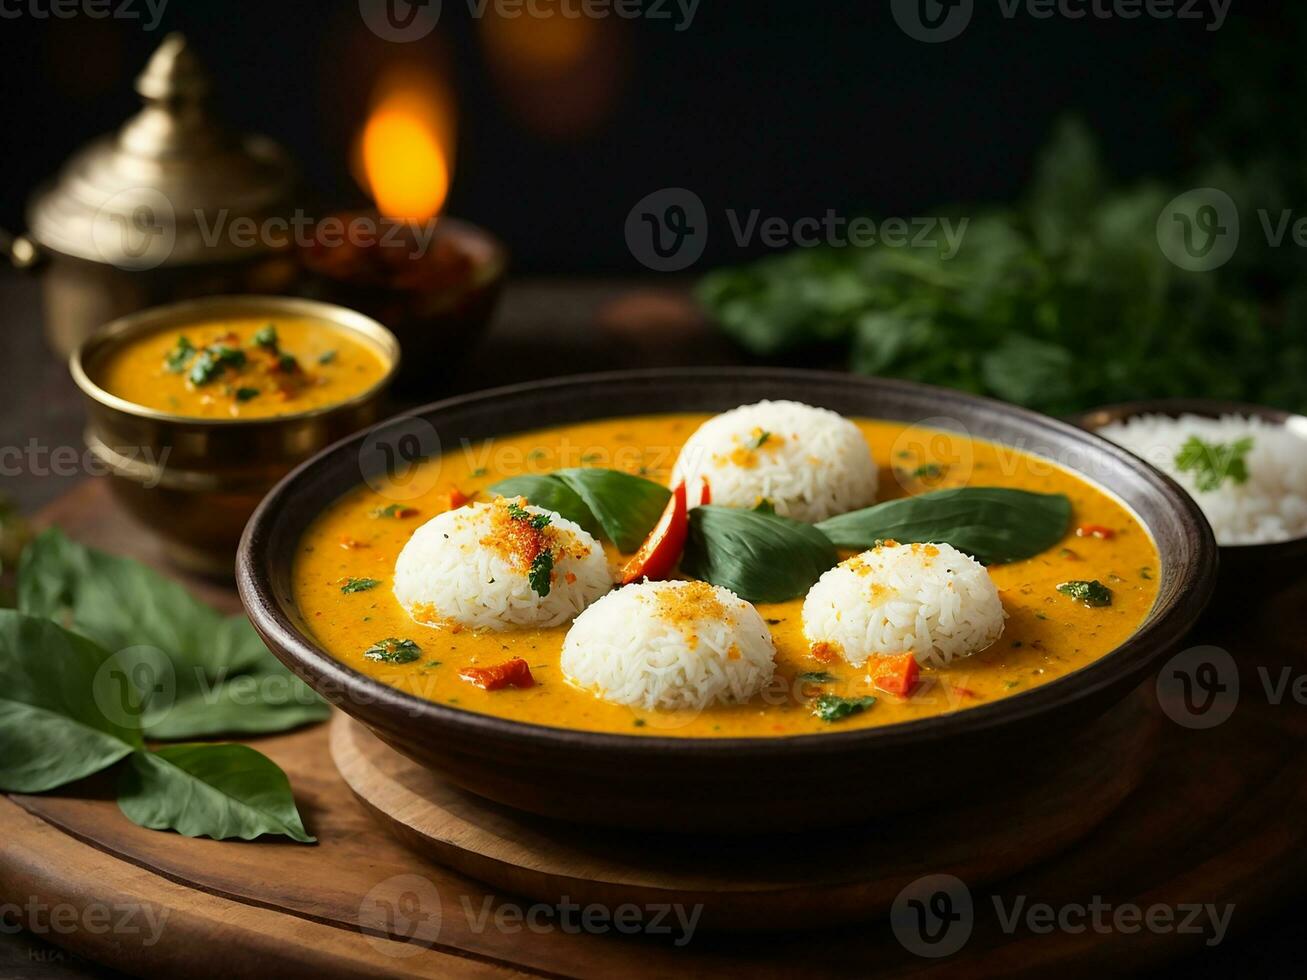 ai generado ociosamente sambar o Idli con sambhar y verde, rojo chatney. popular sur indio desayuno foto